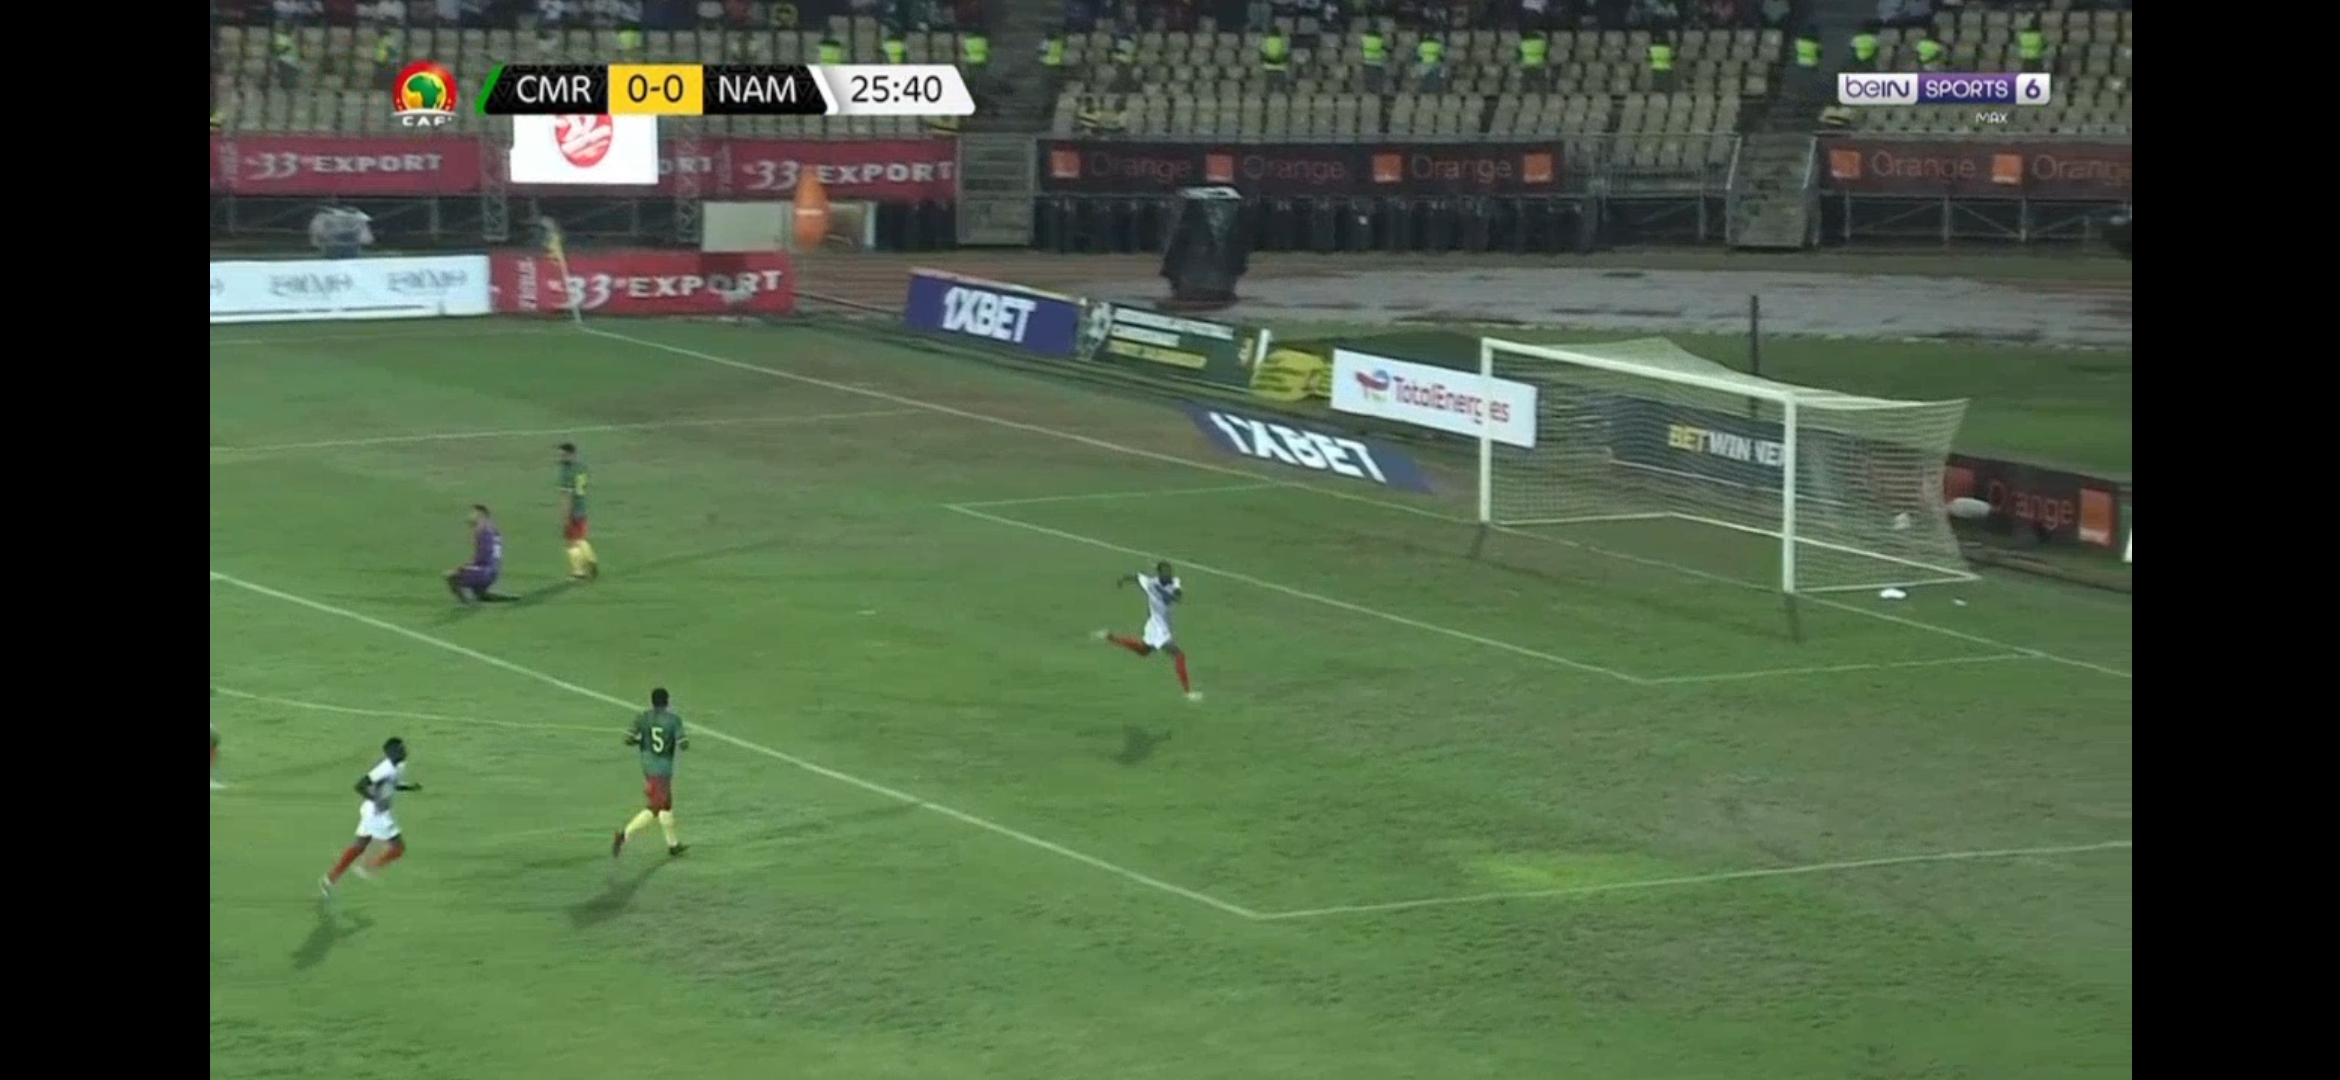 Ouverture du score pour la Namibie qui surprend le Cameroun (Vidéo)